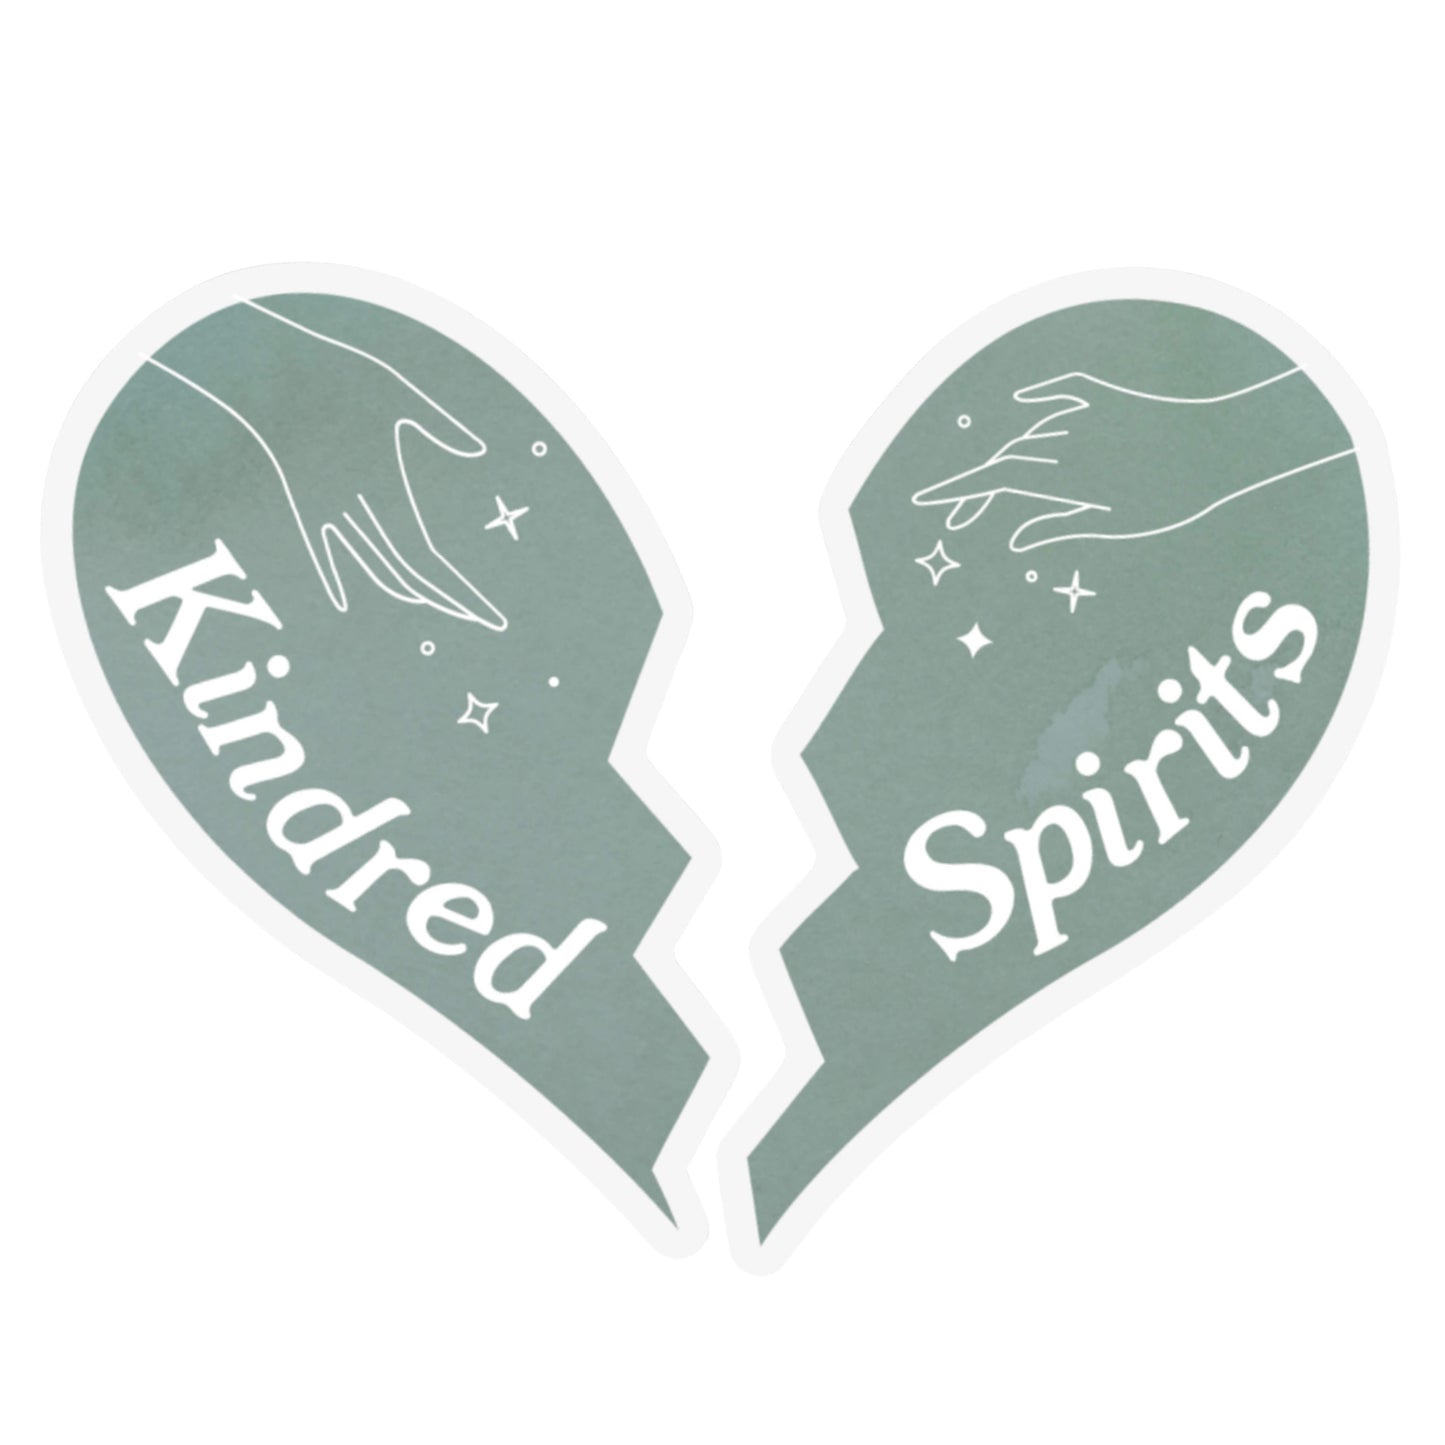 Kindred Spirits Whimsical Sticker